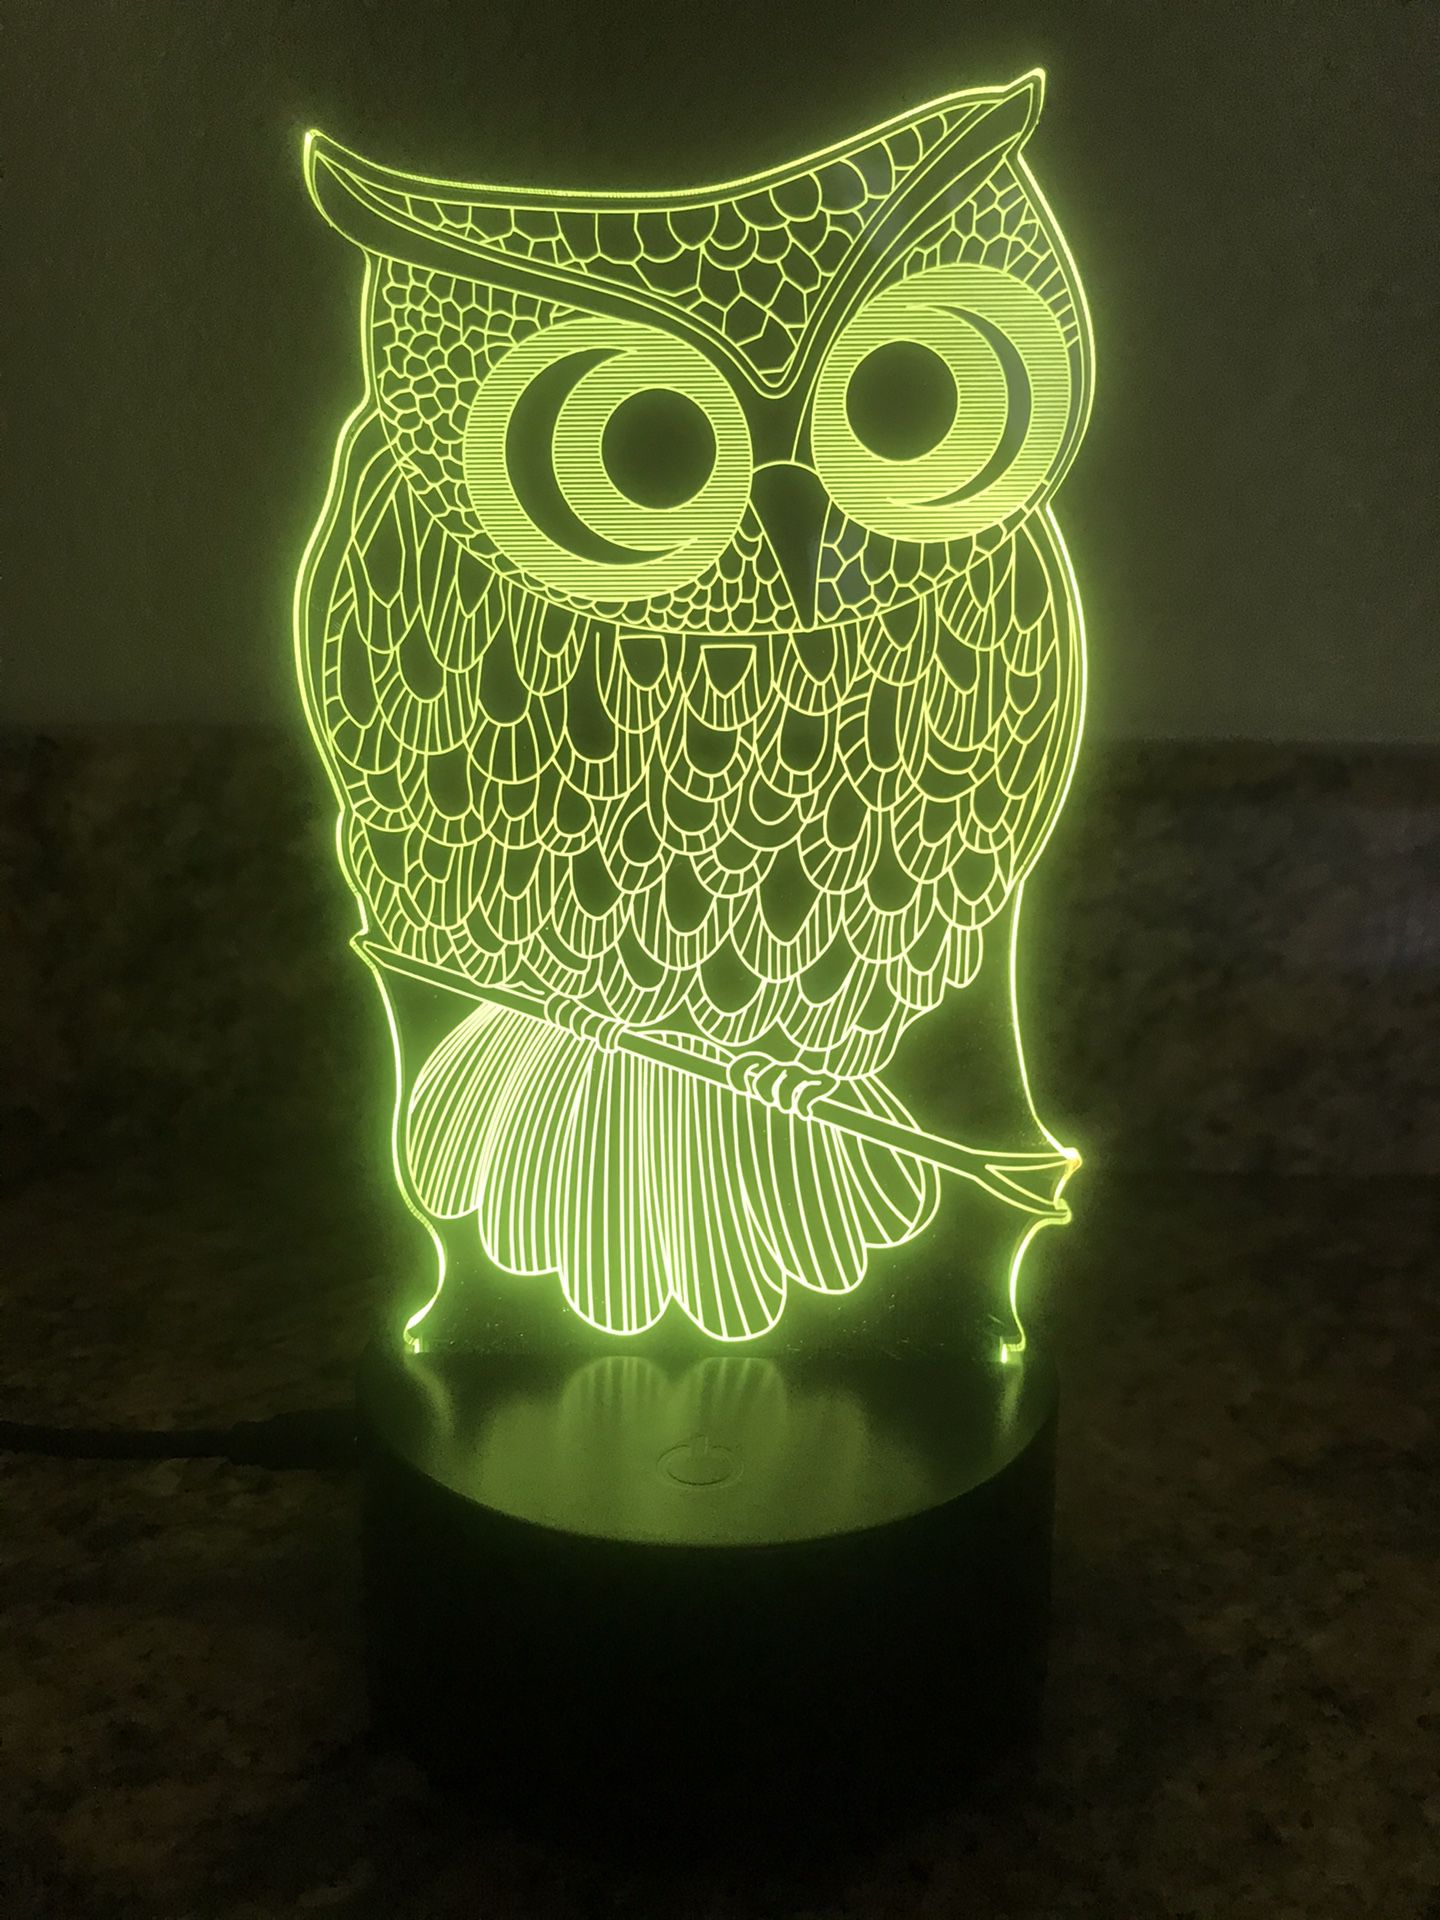 Beautiful owl 🦉 3D lamp !